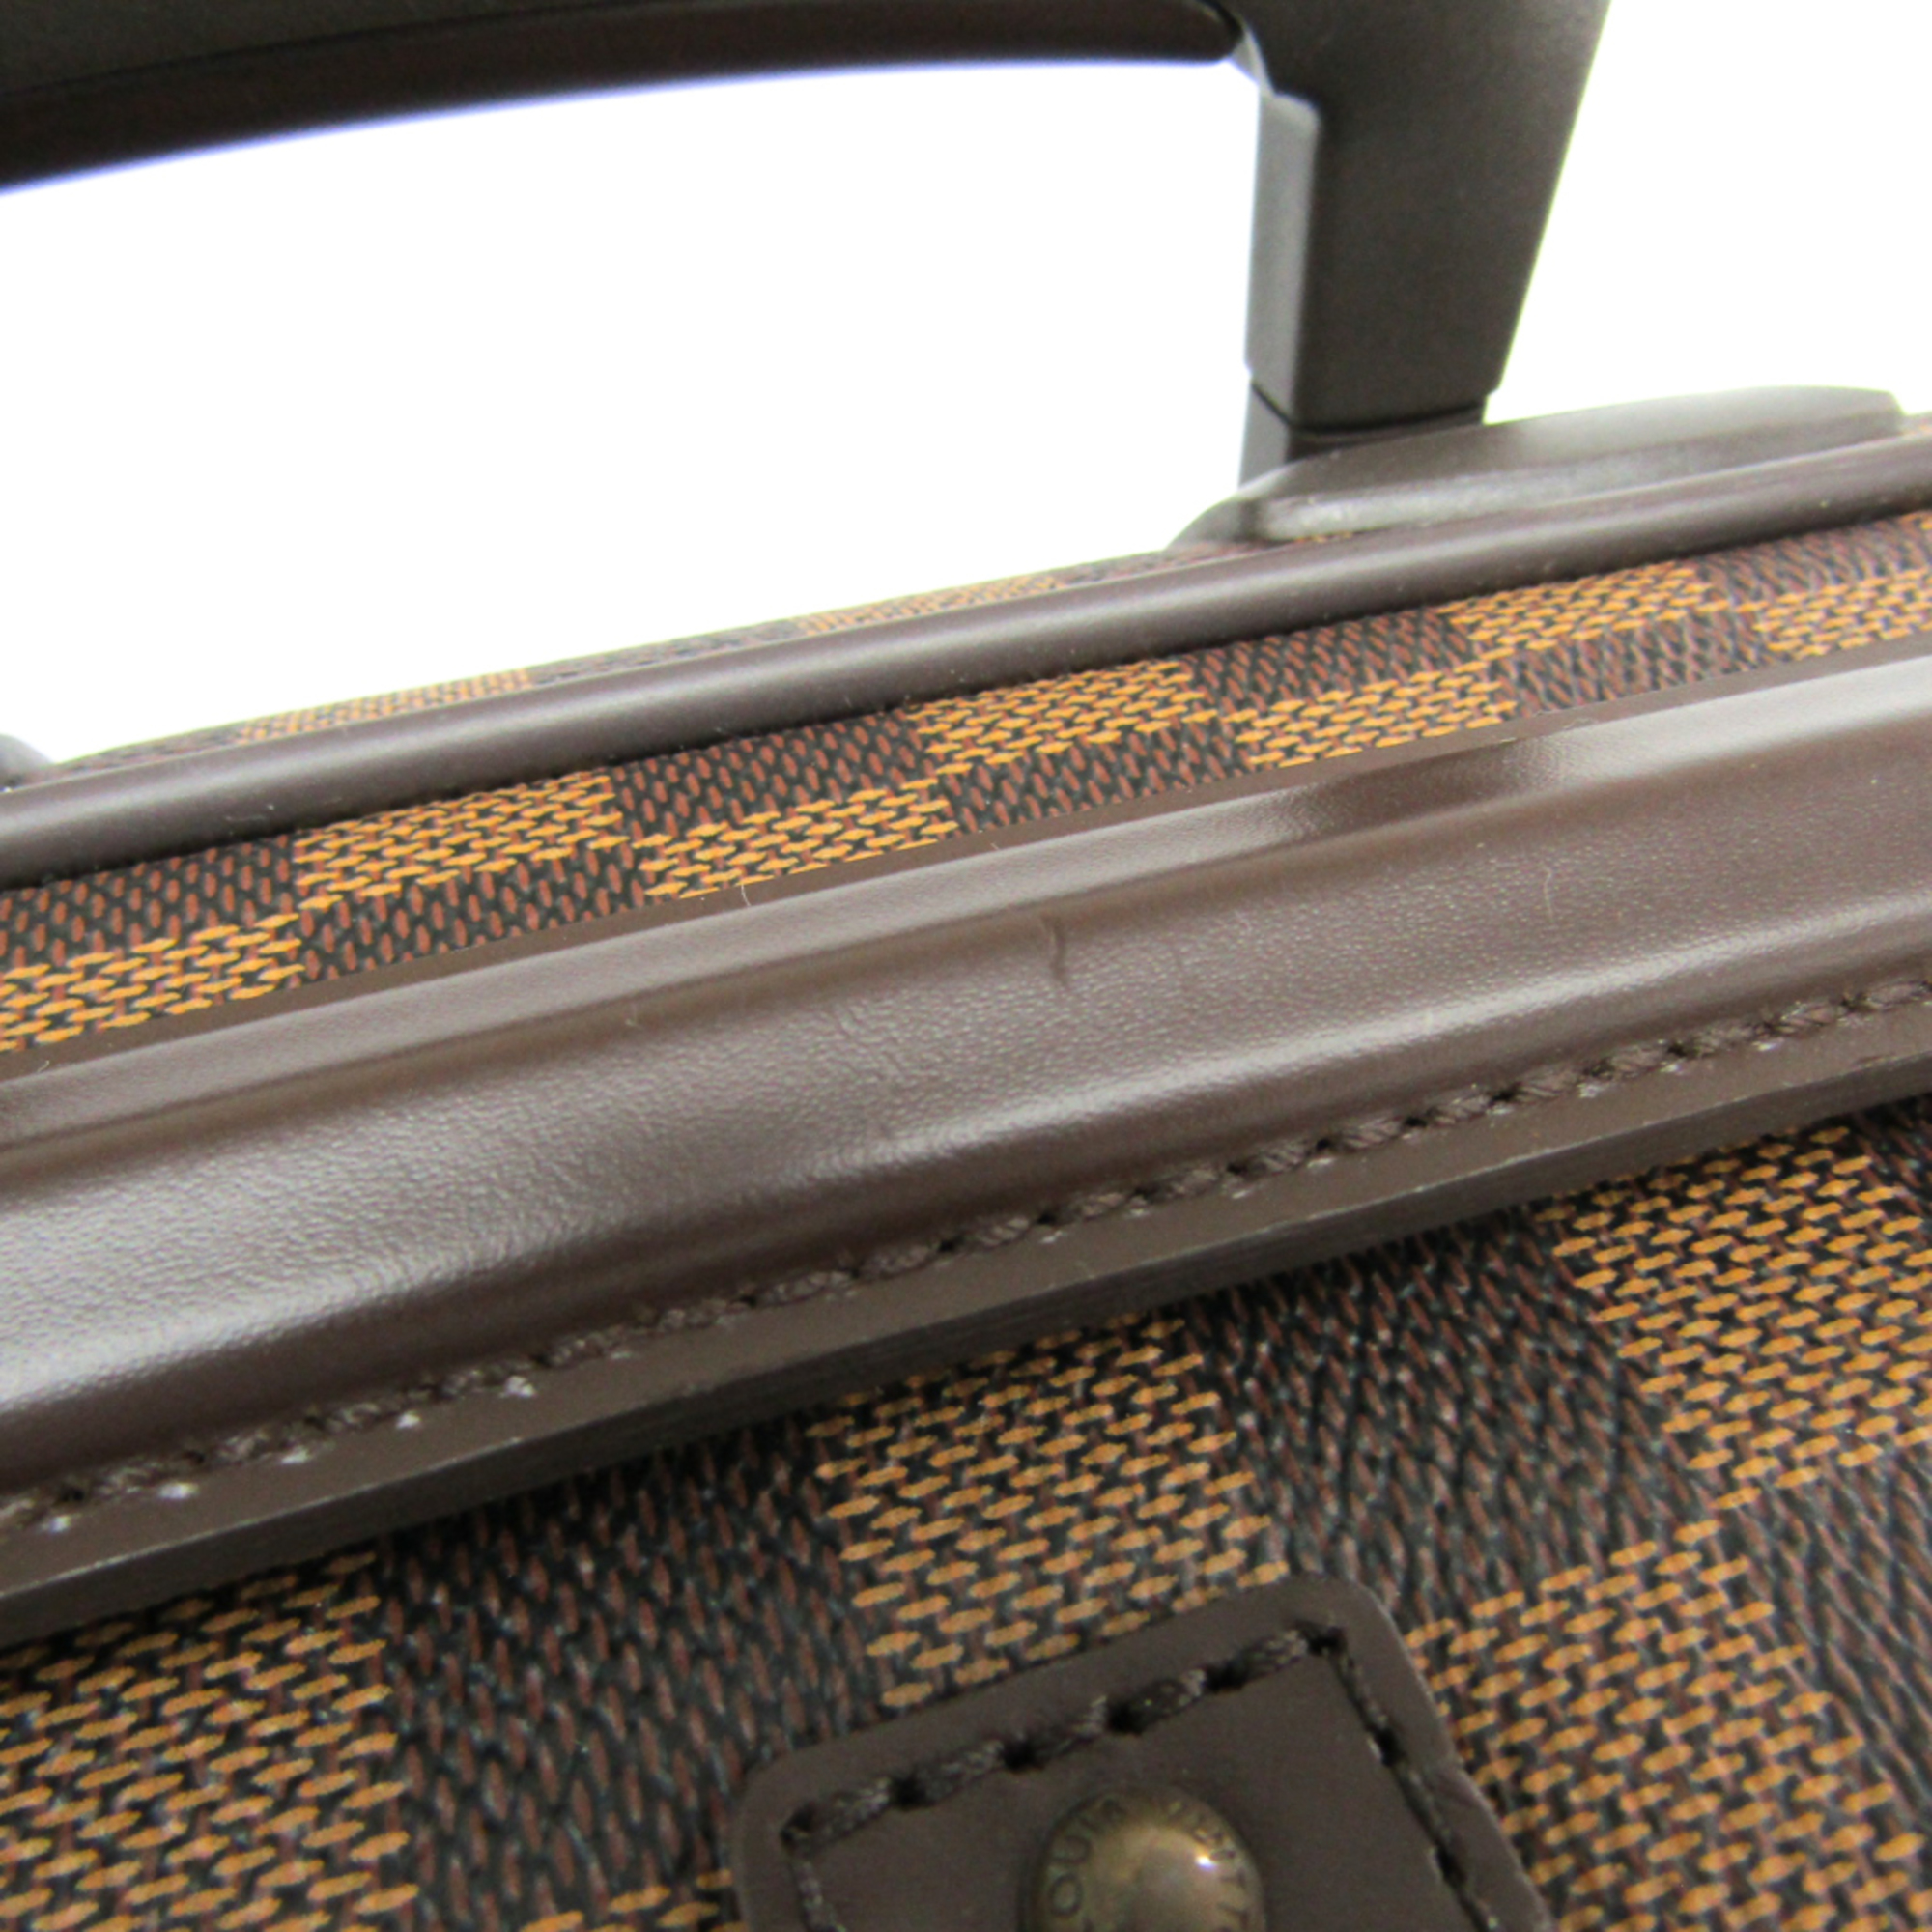 Louis Vuitton Damier Soft Case Trolley Bag Ebene Pegase 60 N23255